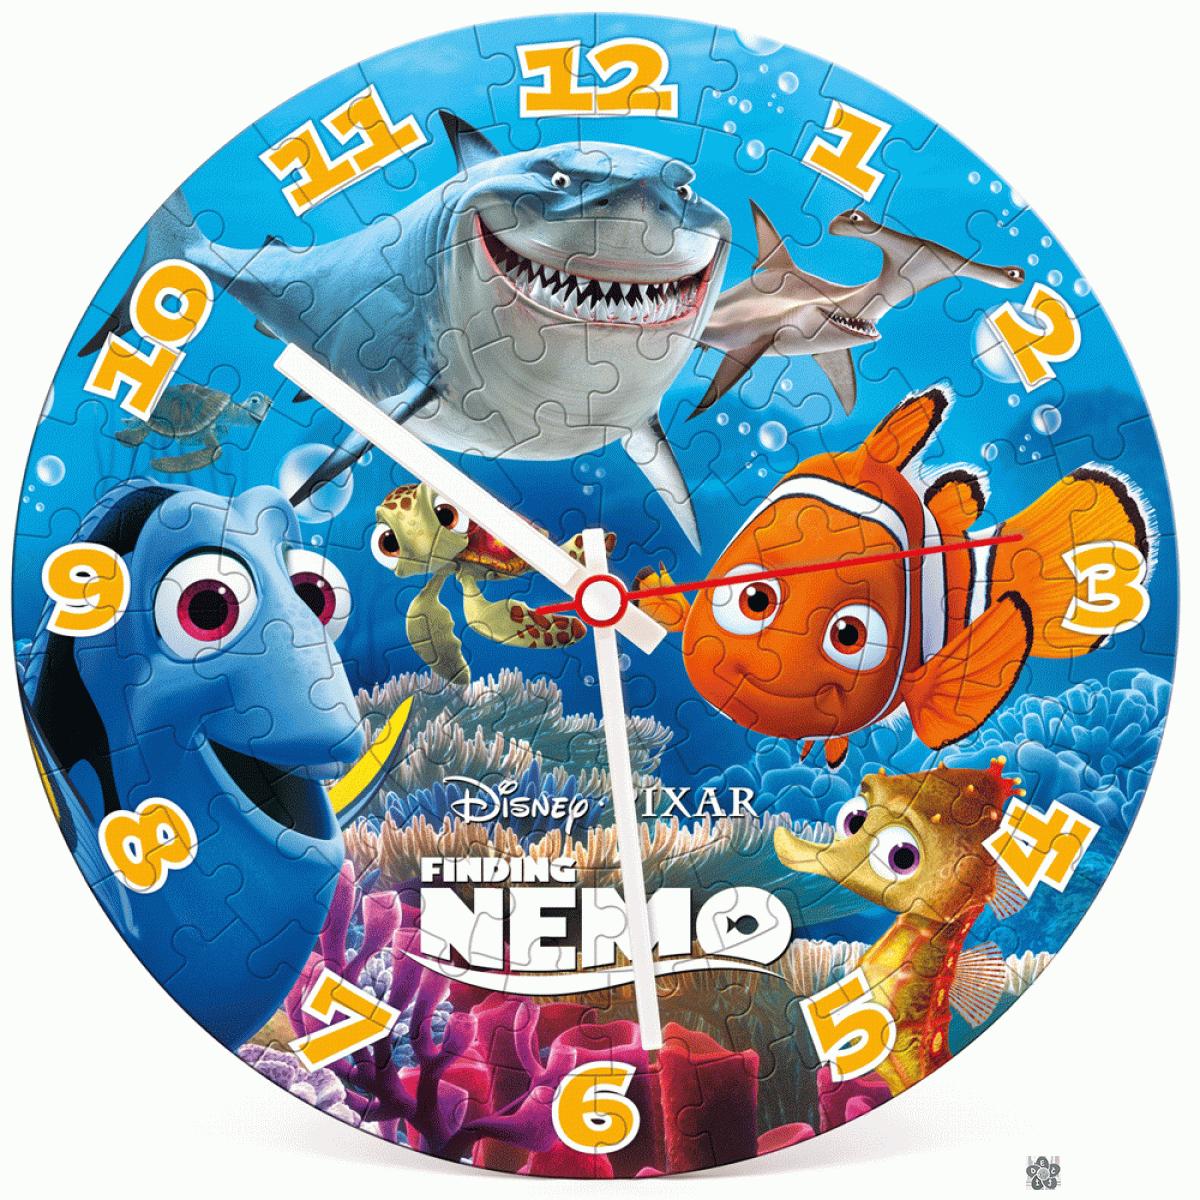 Puzzle Nemo sat 96 delova Clementoni, 23022 